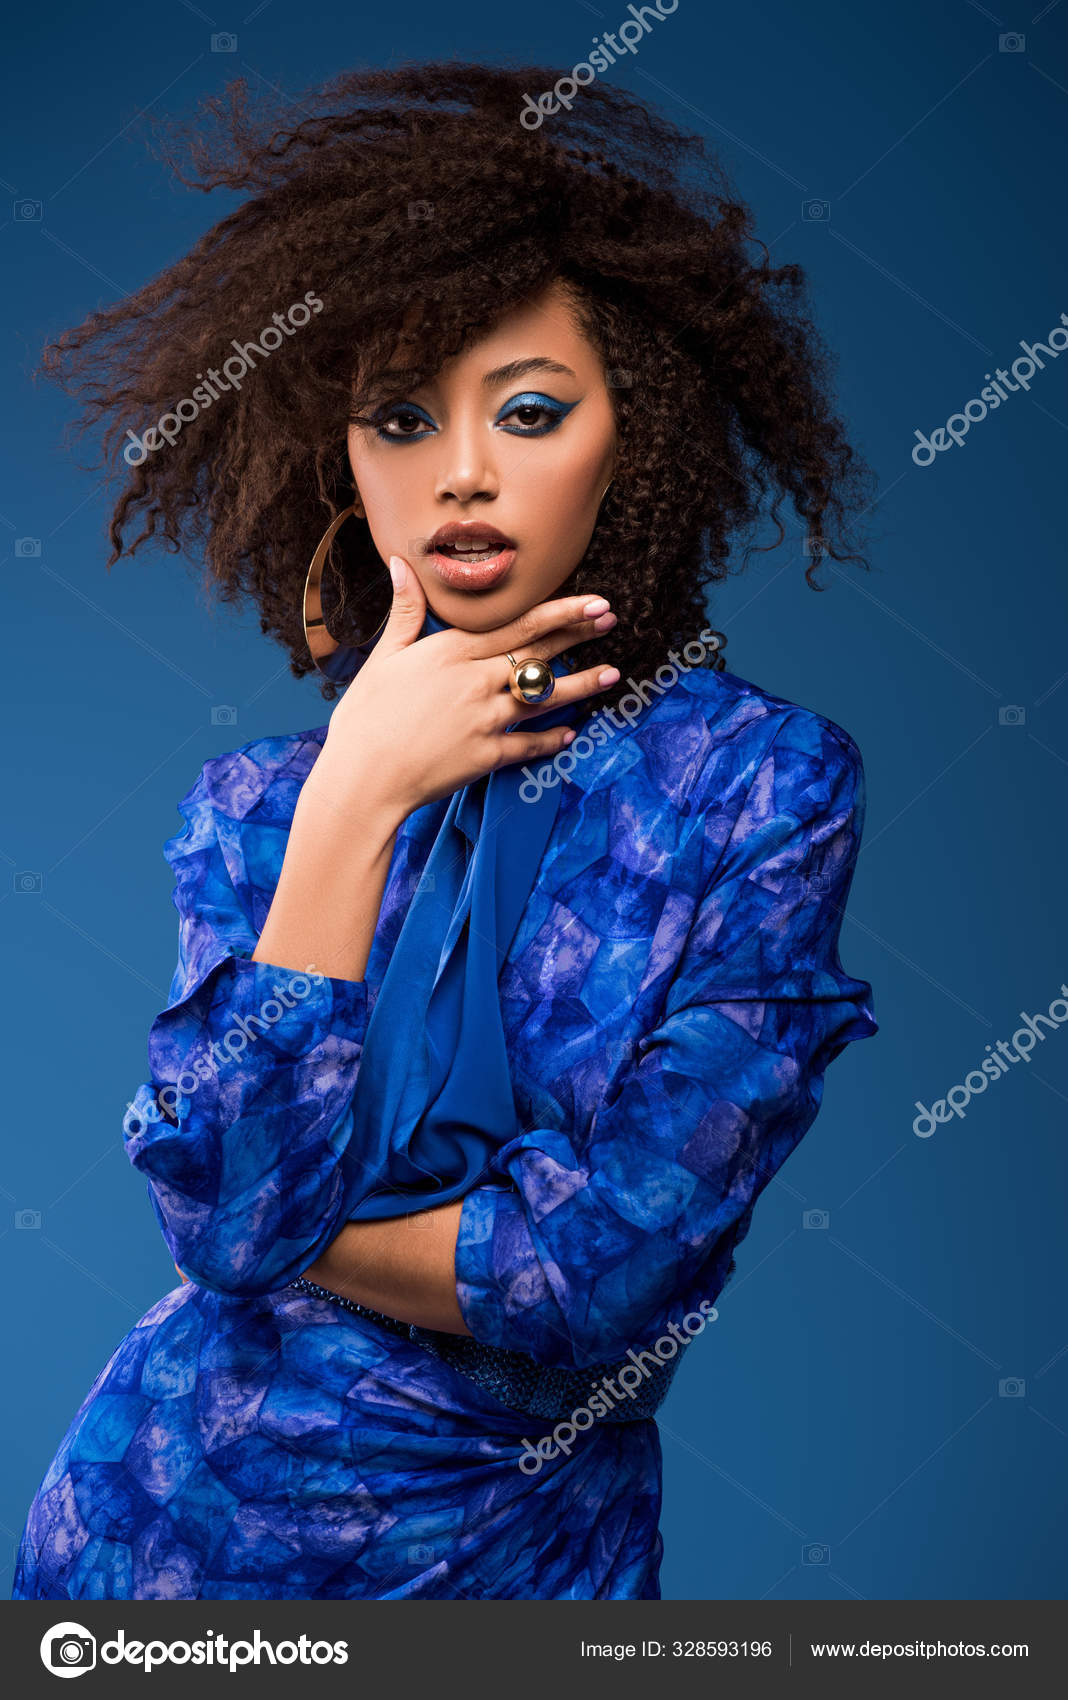 Makeup Ideas for Royal Blue Dress | TikTok